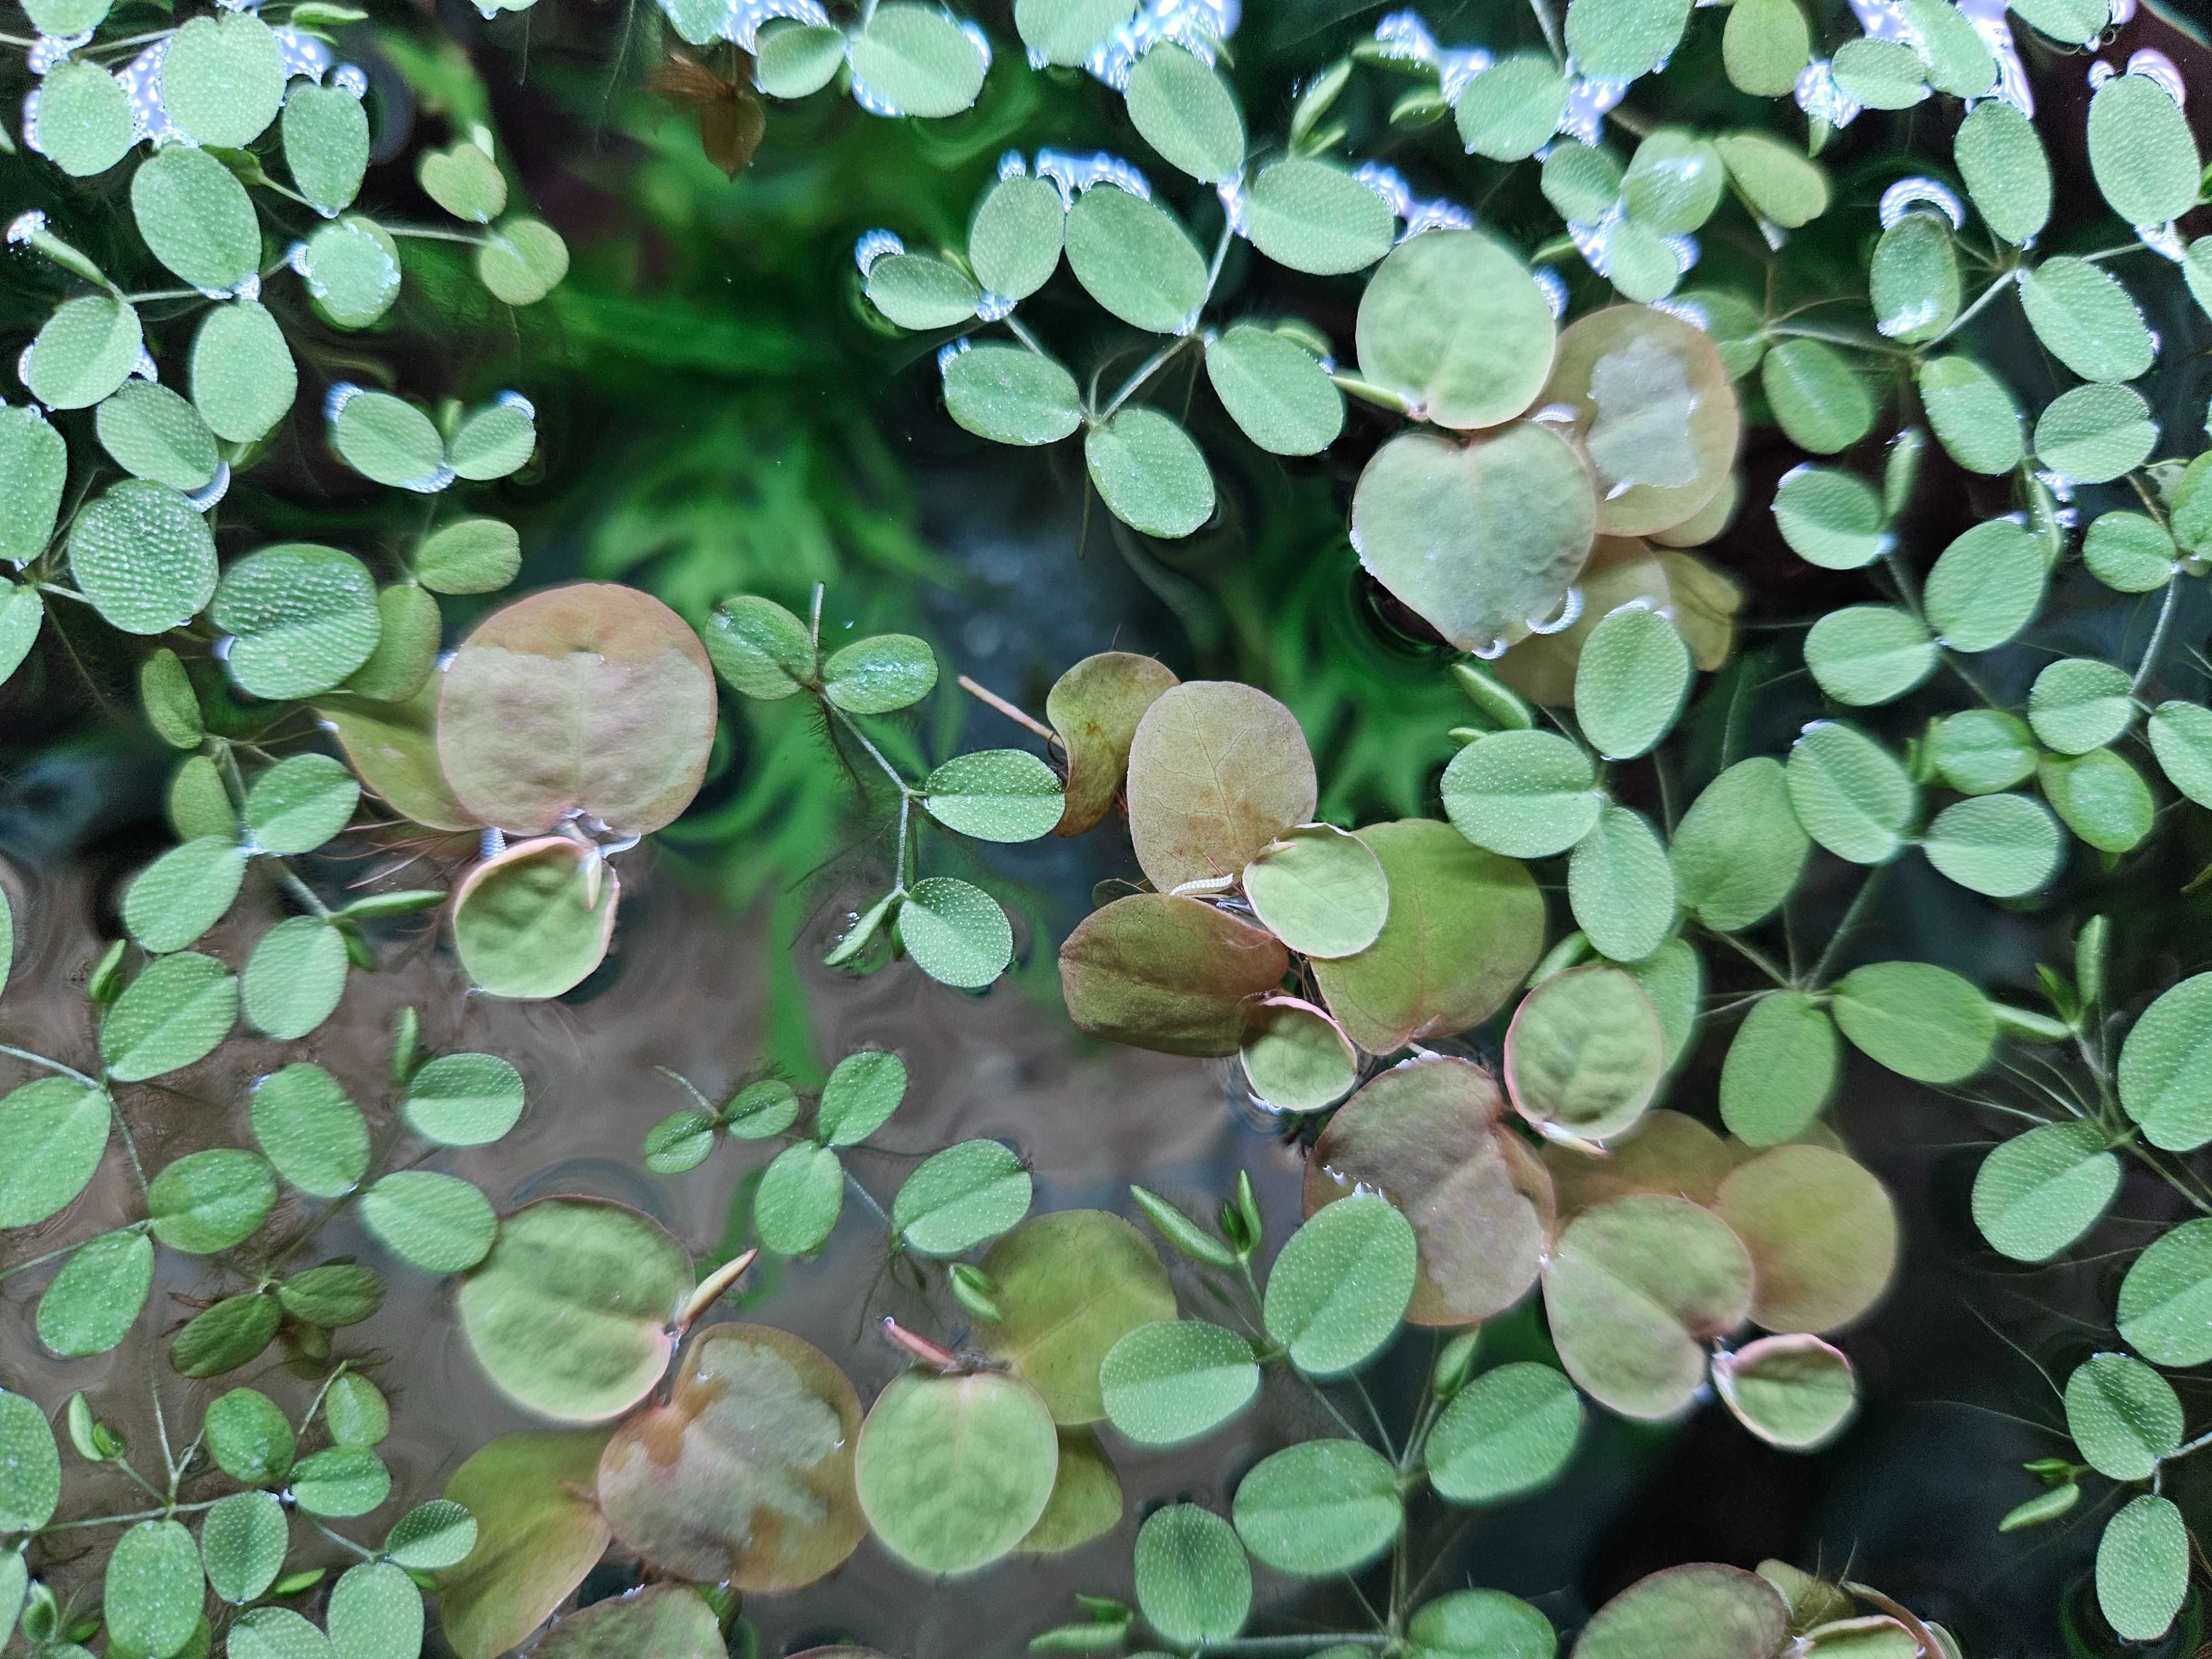 Salvinia Auriculata uszkowata/brazylijska pływająca roślina akwariowa